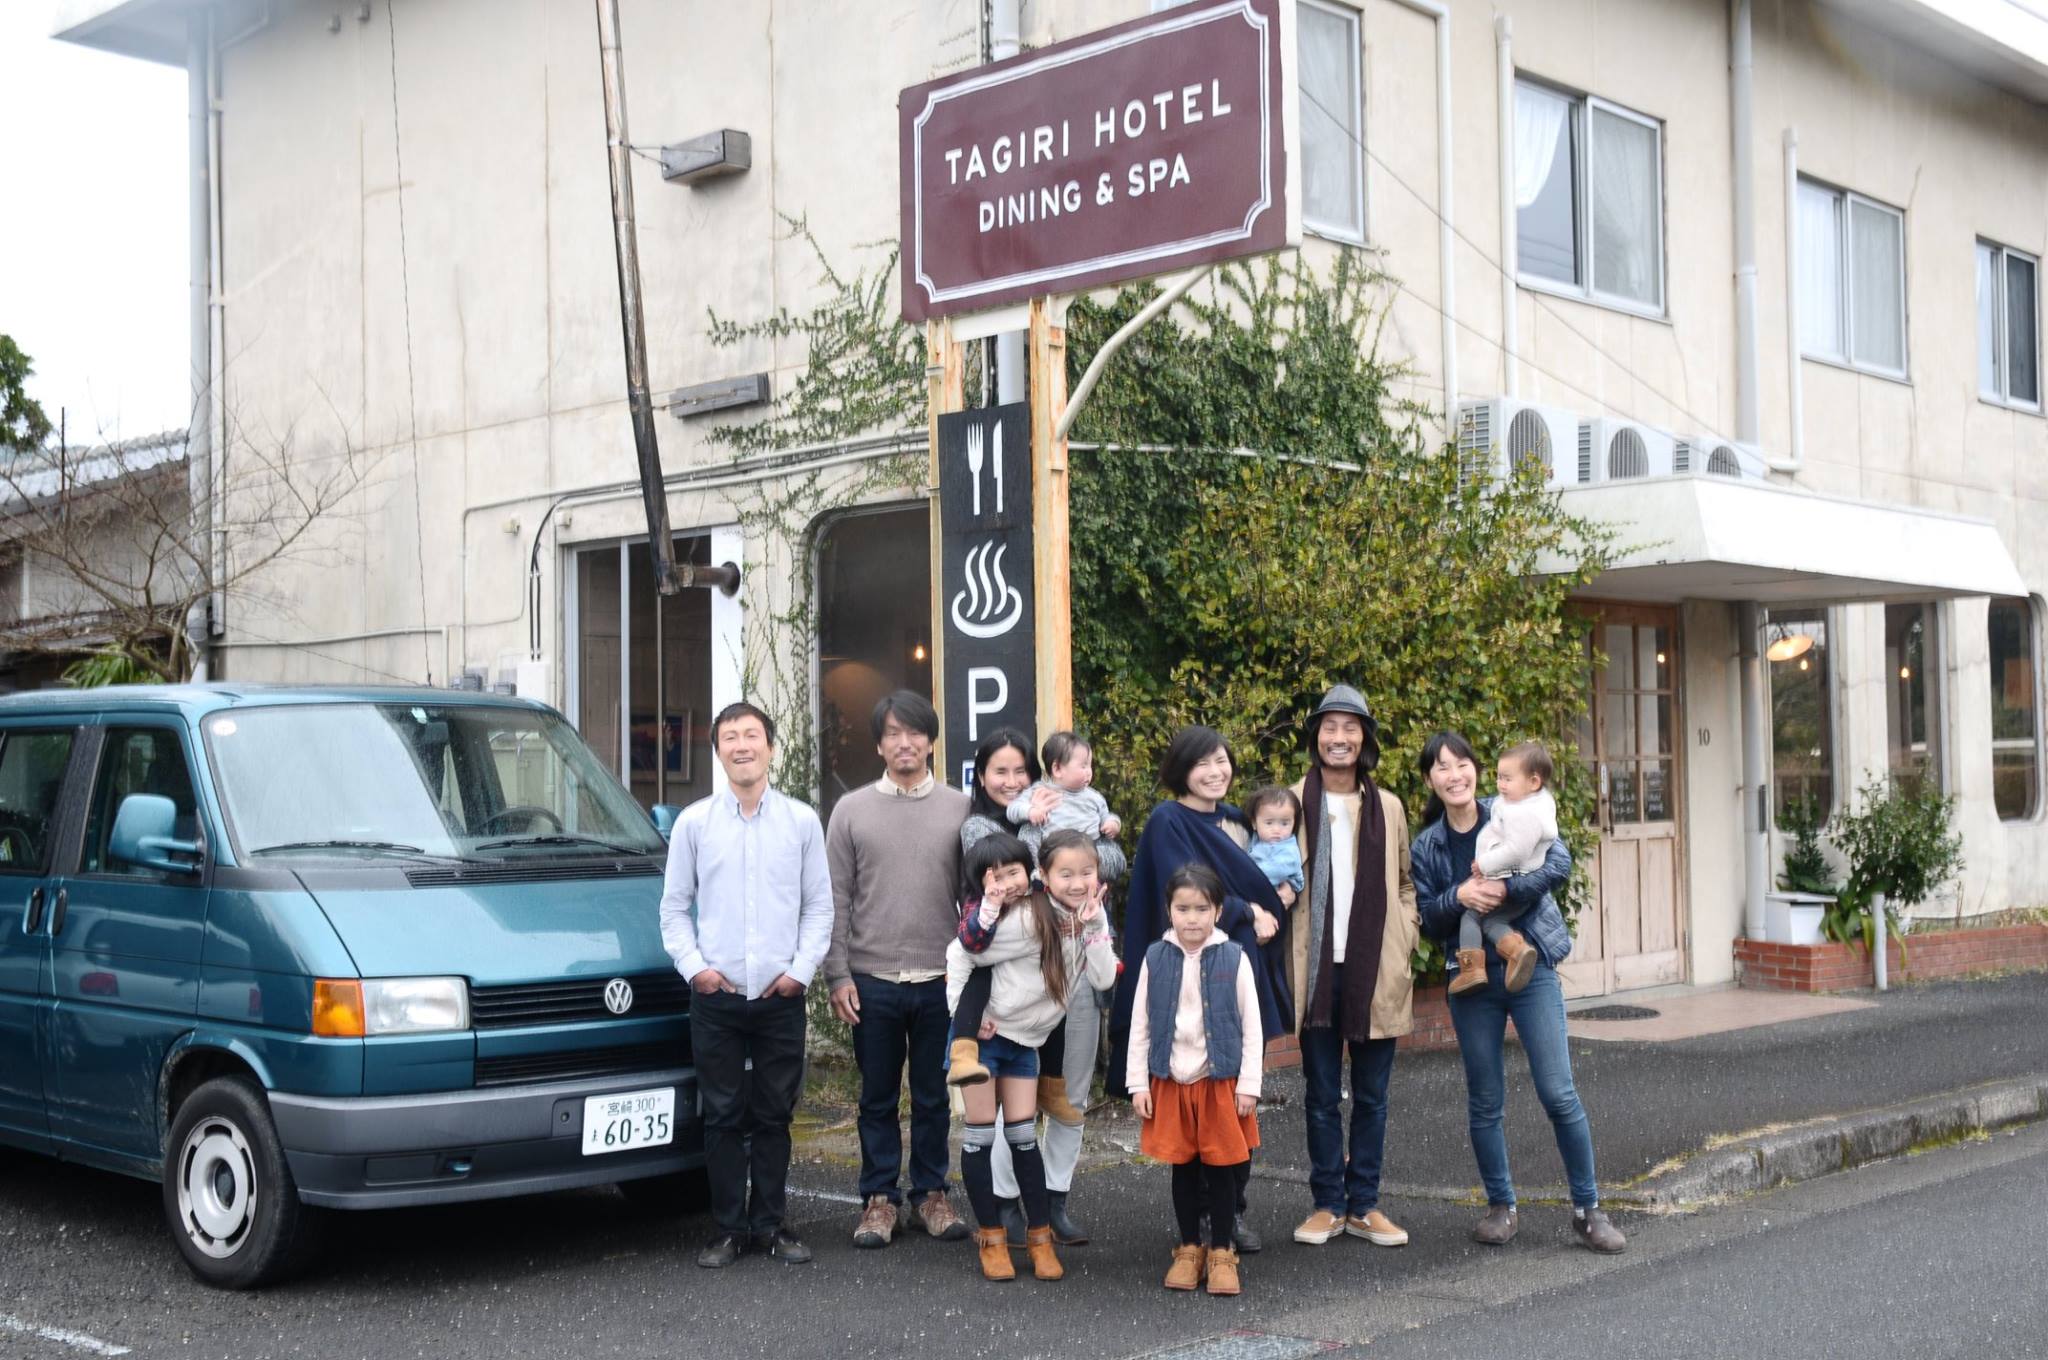 宮崎の限界集落 １日３組のリノベーションホテル iri Hotel による 心が滾る豊かな暮らしのヒント を伝える本を作りたい Greenfunding